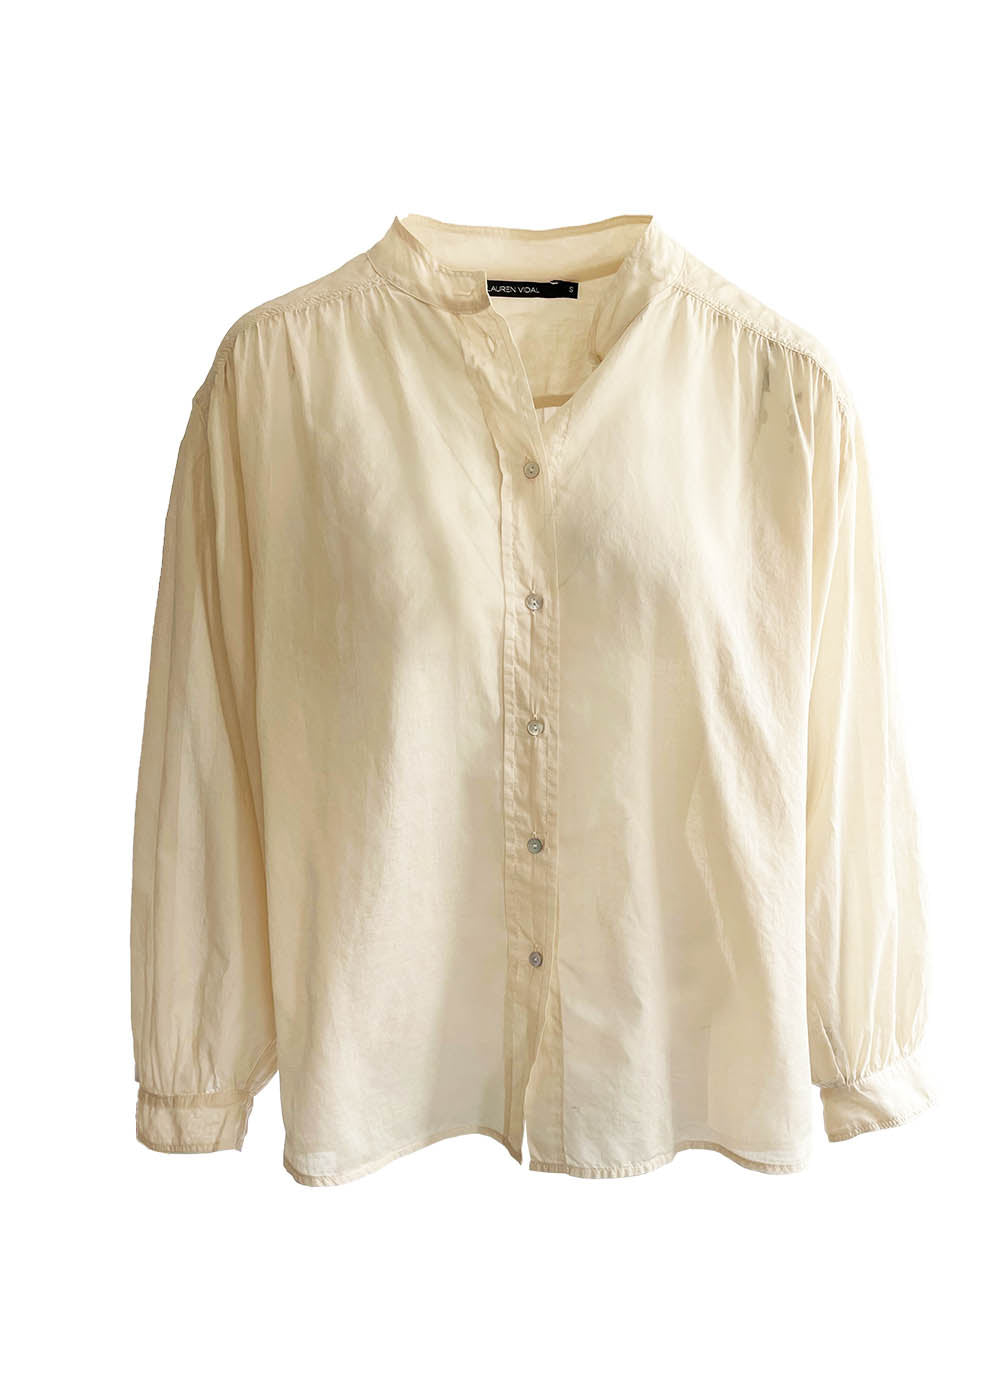 Cotton net shirt, mao collar